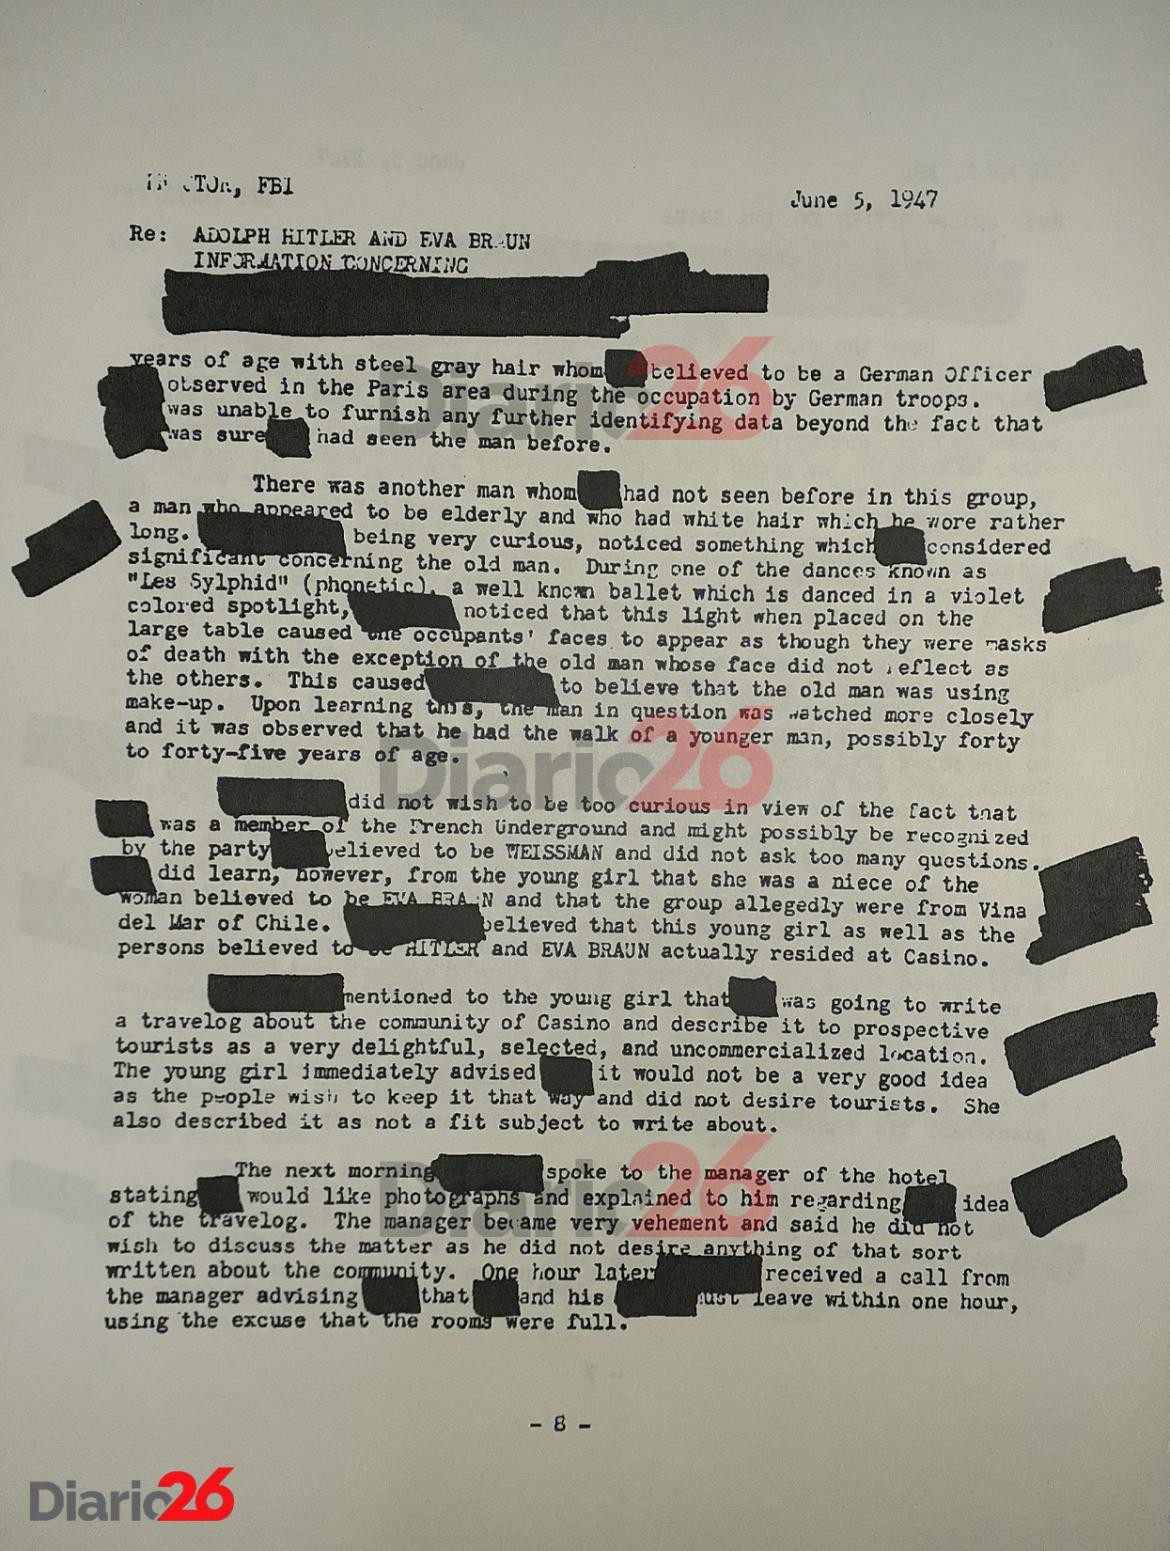 Adolf Hitler en Brasil, Hotel Atlántico, Cassino, documento desclasificado del FBI de 1947 - 08